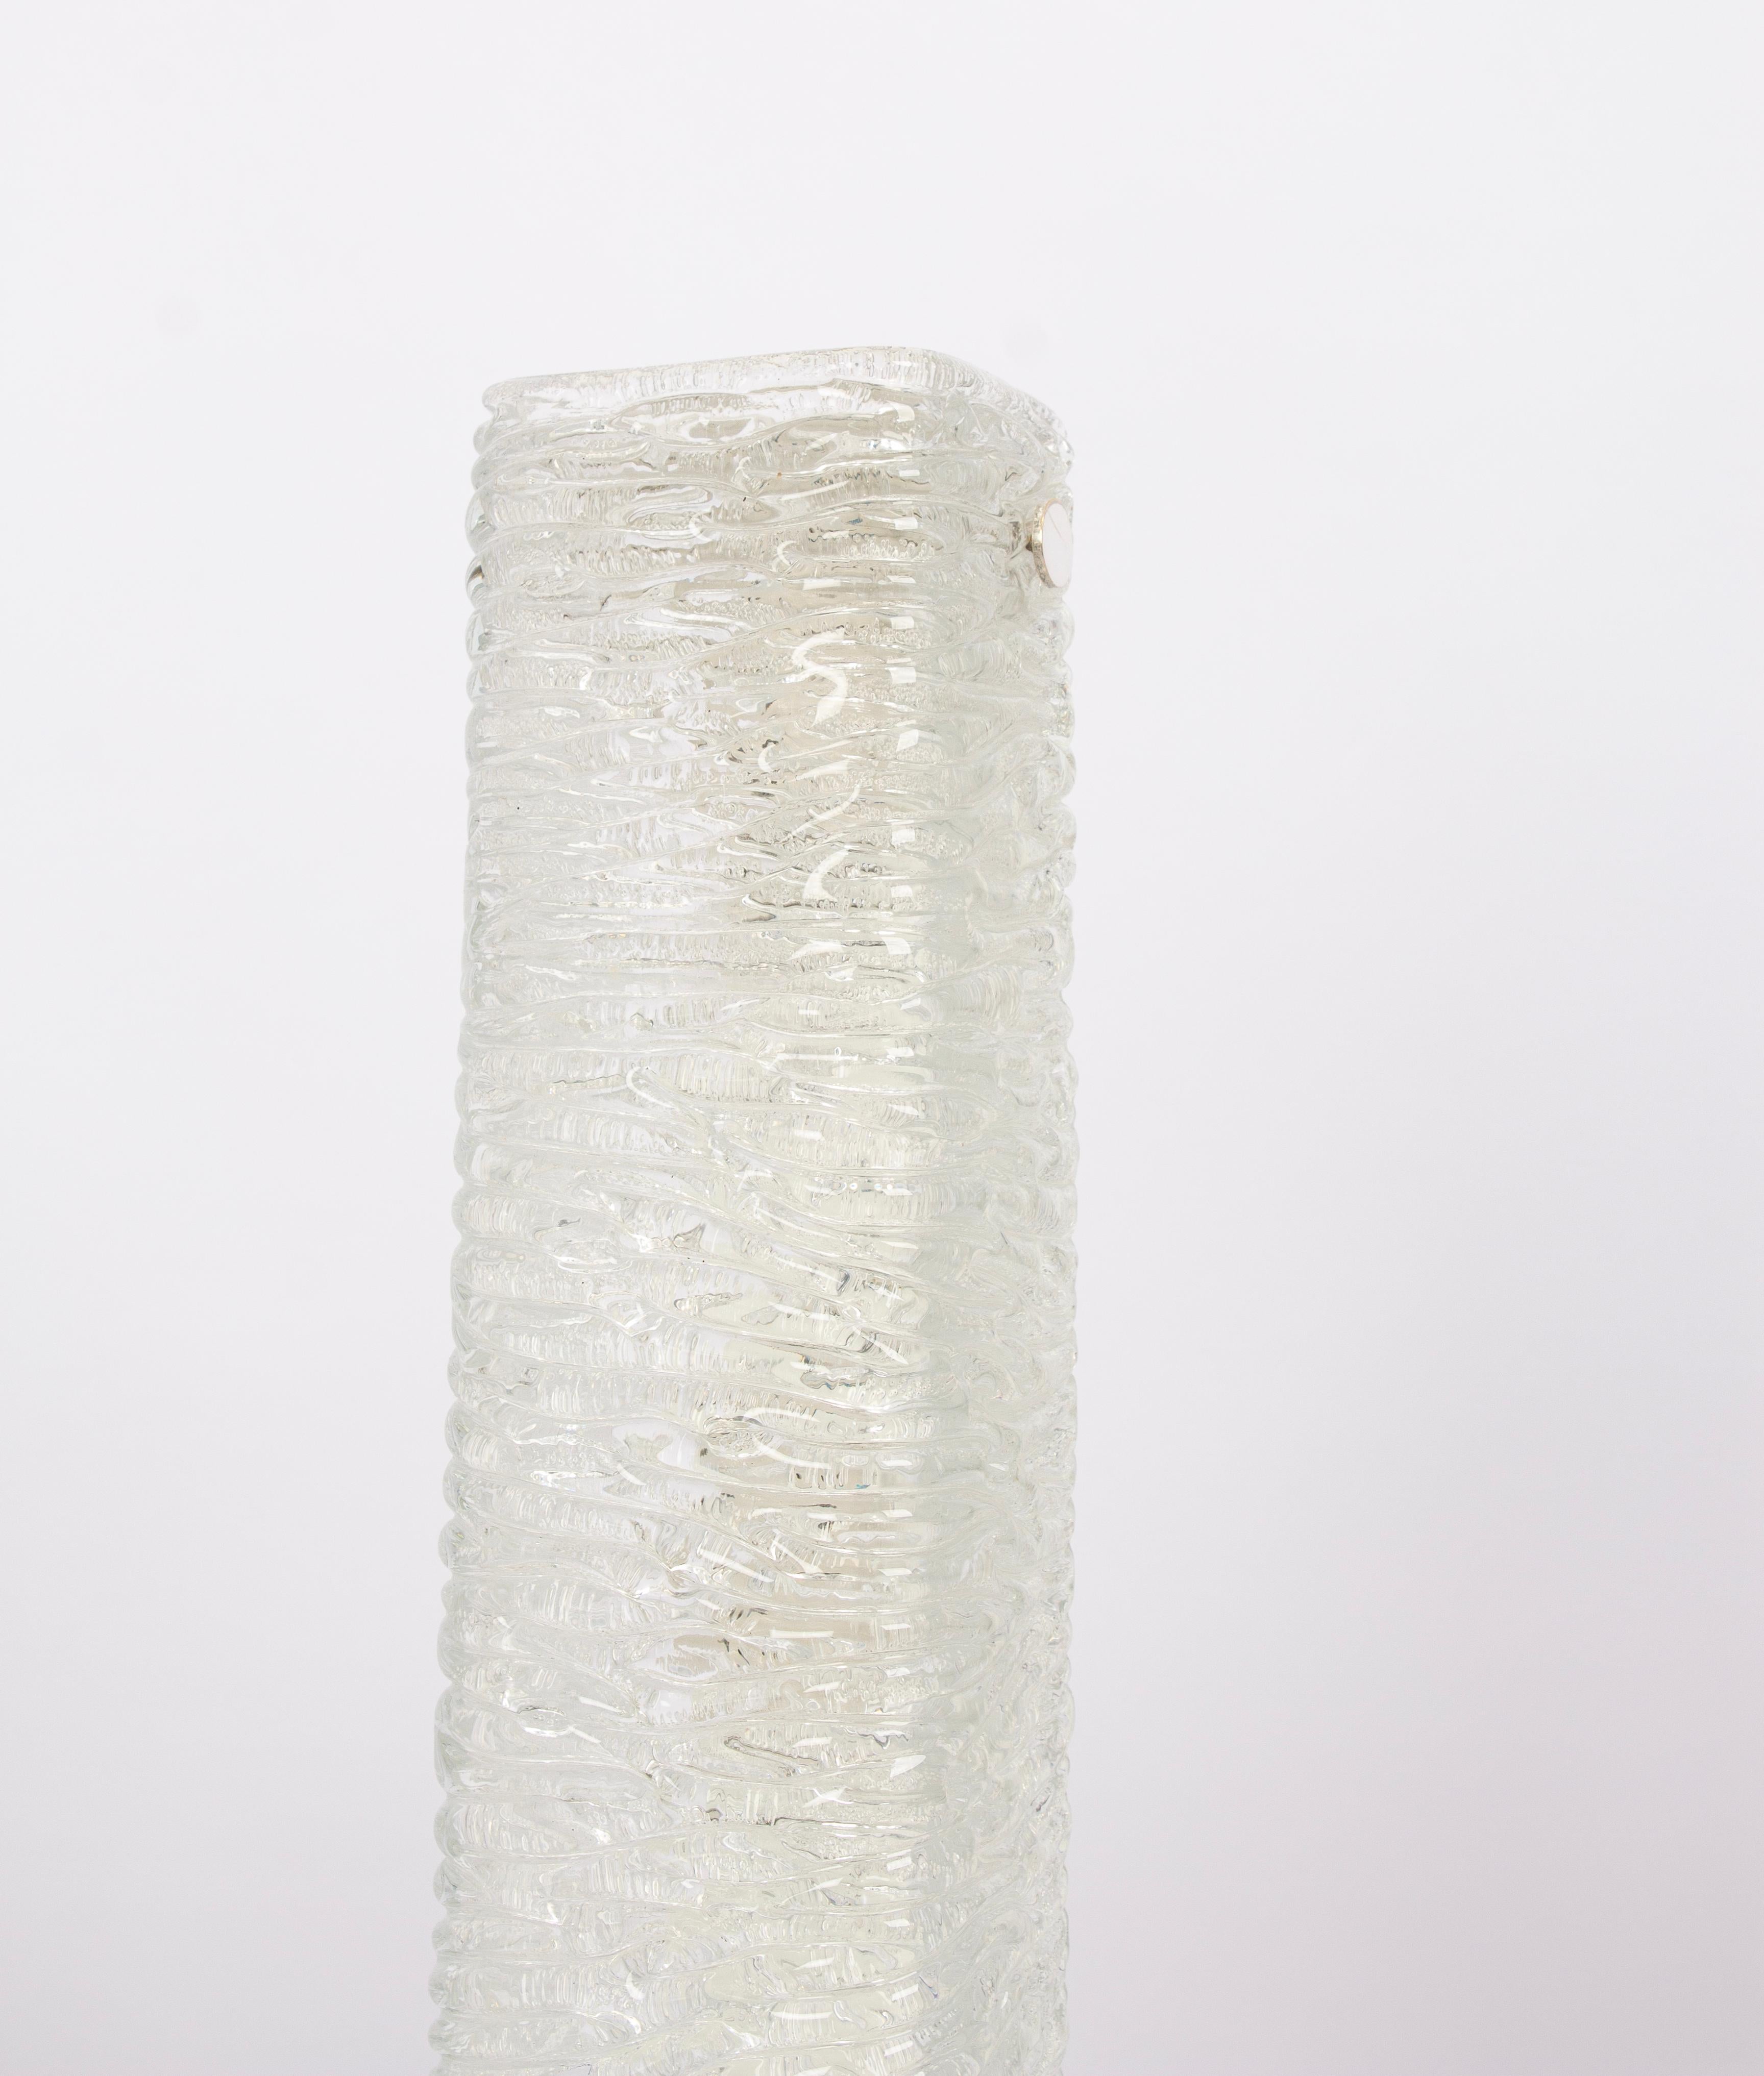 1 de 6 Superbes appliques en verre de Murano par Kaiser Leuchten, Allemagne, vers les années 1970.

De grande qualité et en très bon état. Nettoyé, bien câblé et prêt à être utilisé.

Chaque luminaire nécessite trois petites ampoules E14 de 40W max